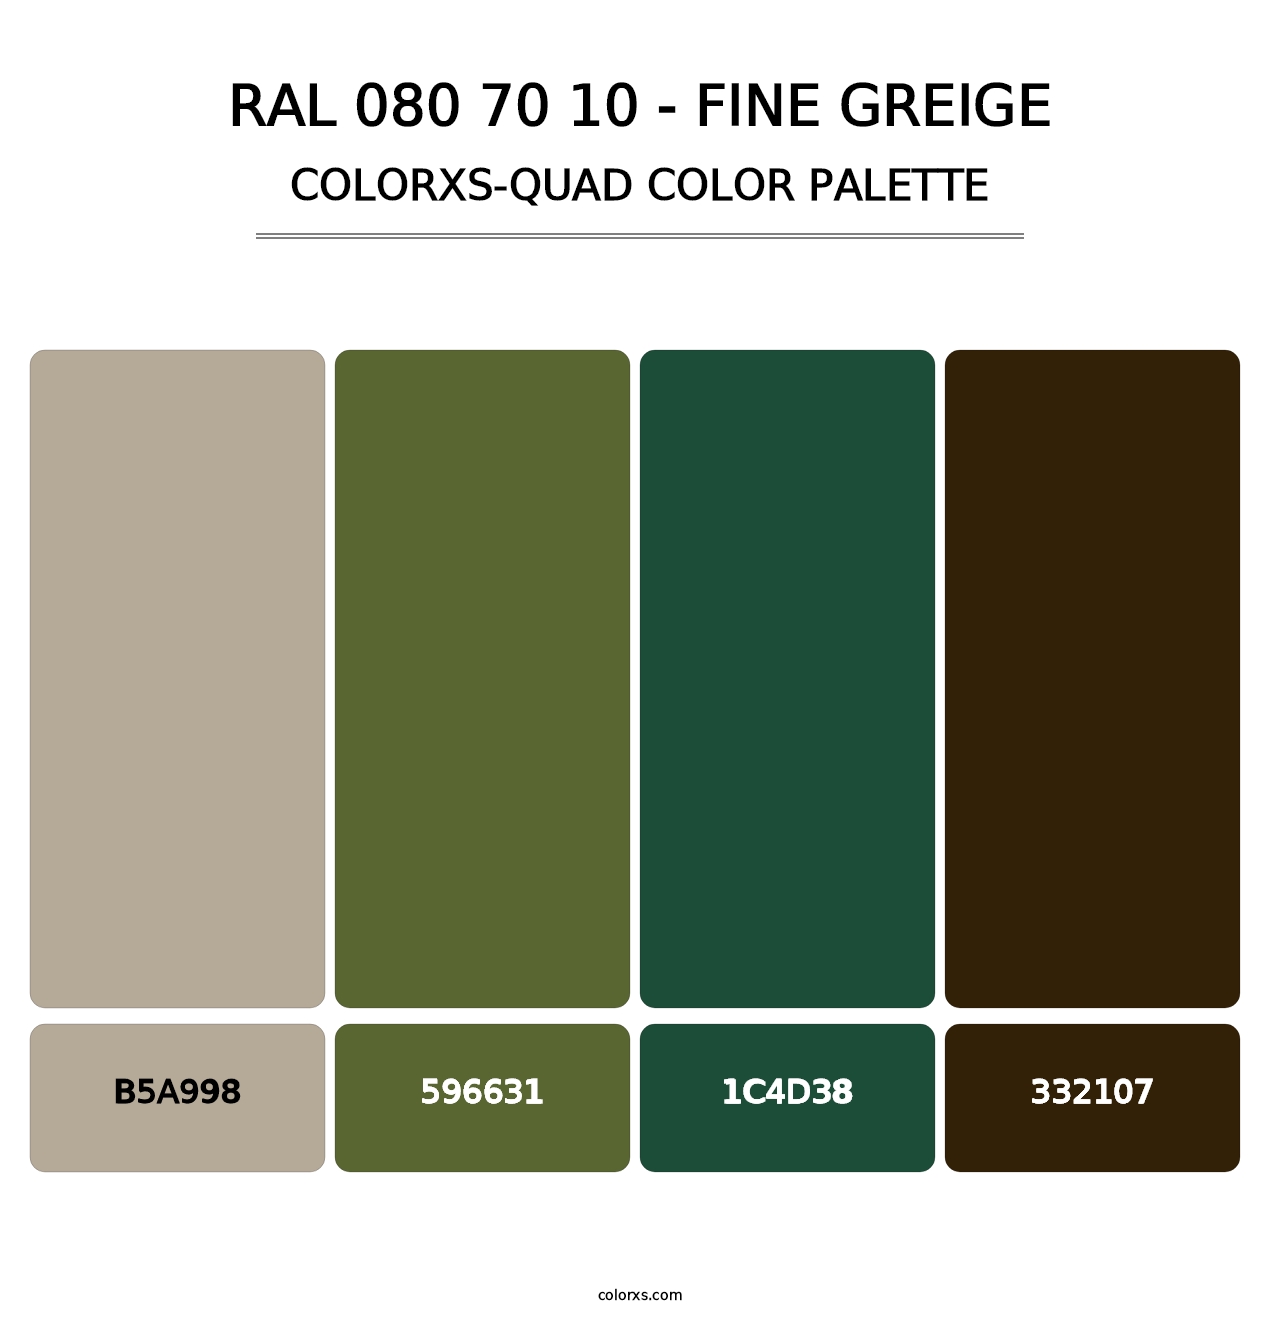 RAL 080 70 10 - Fine Greige - Colorxs Quad Palette